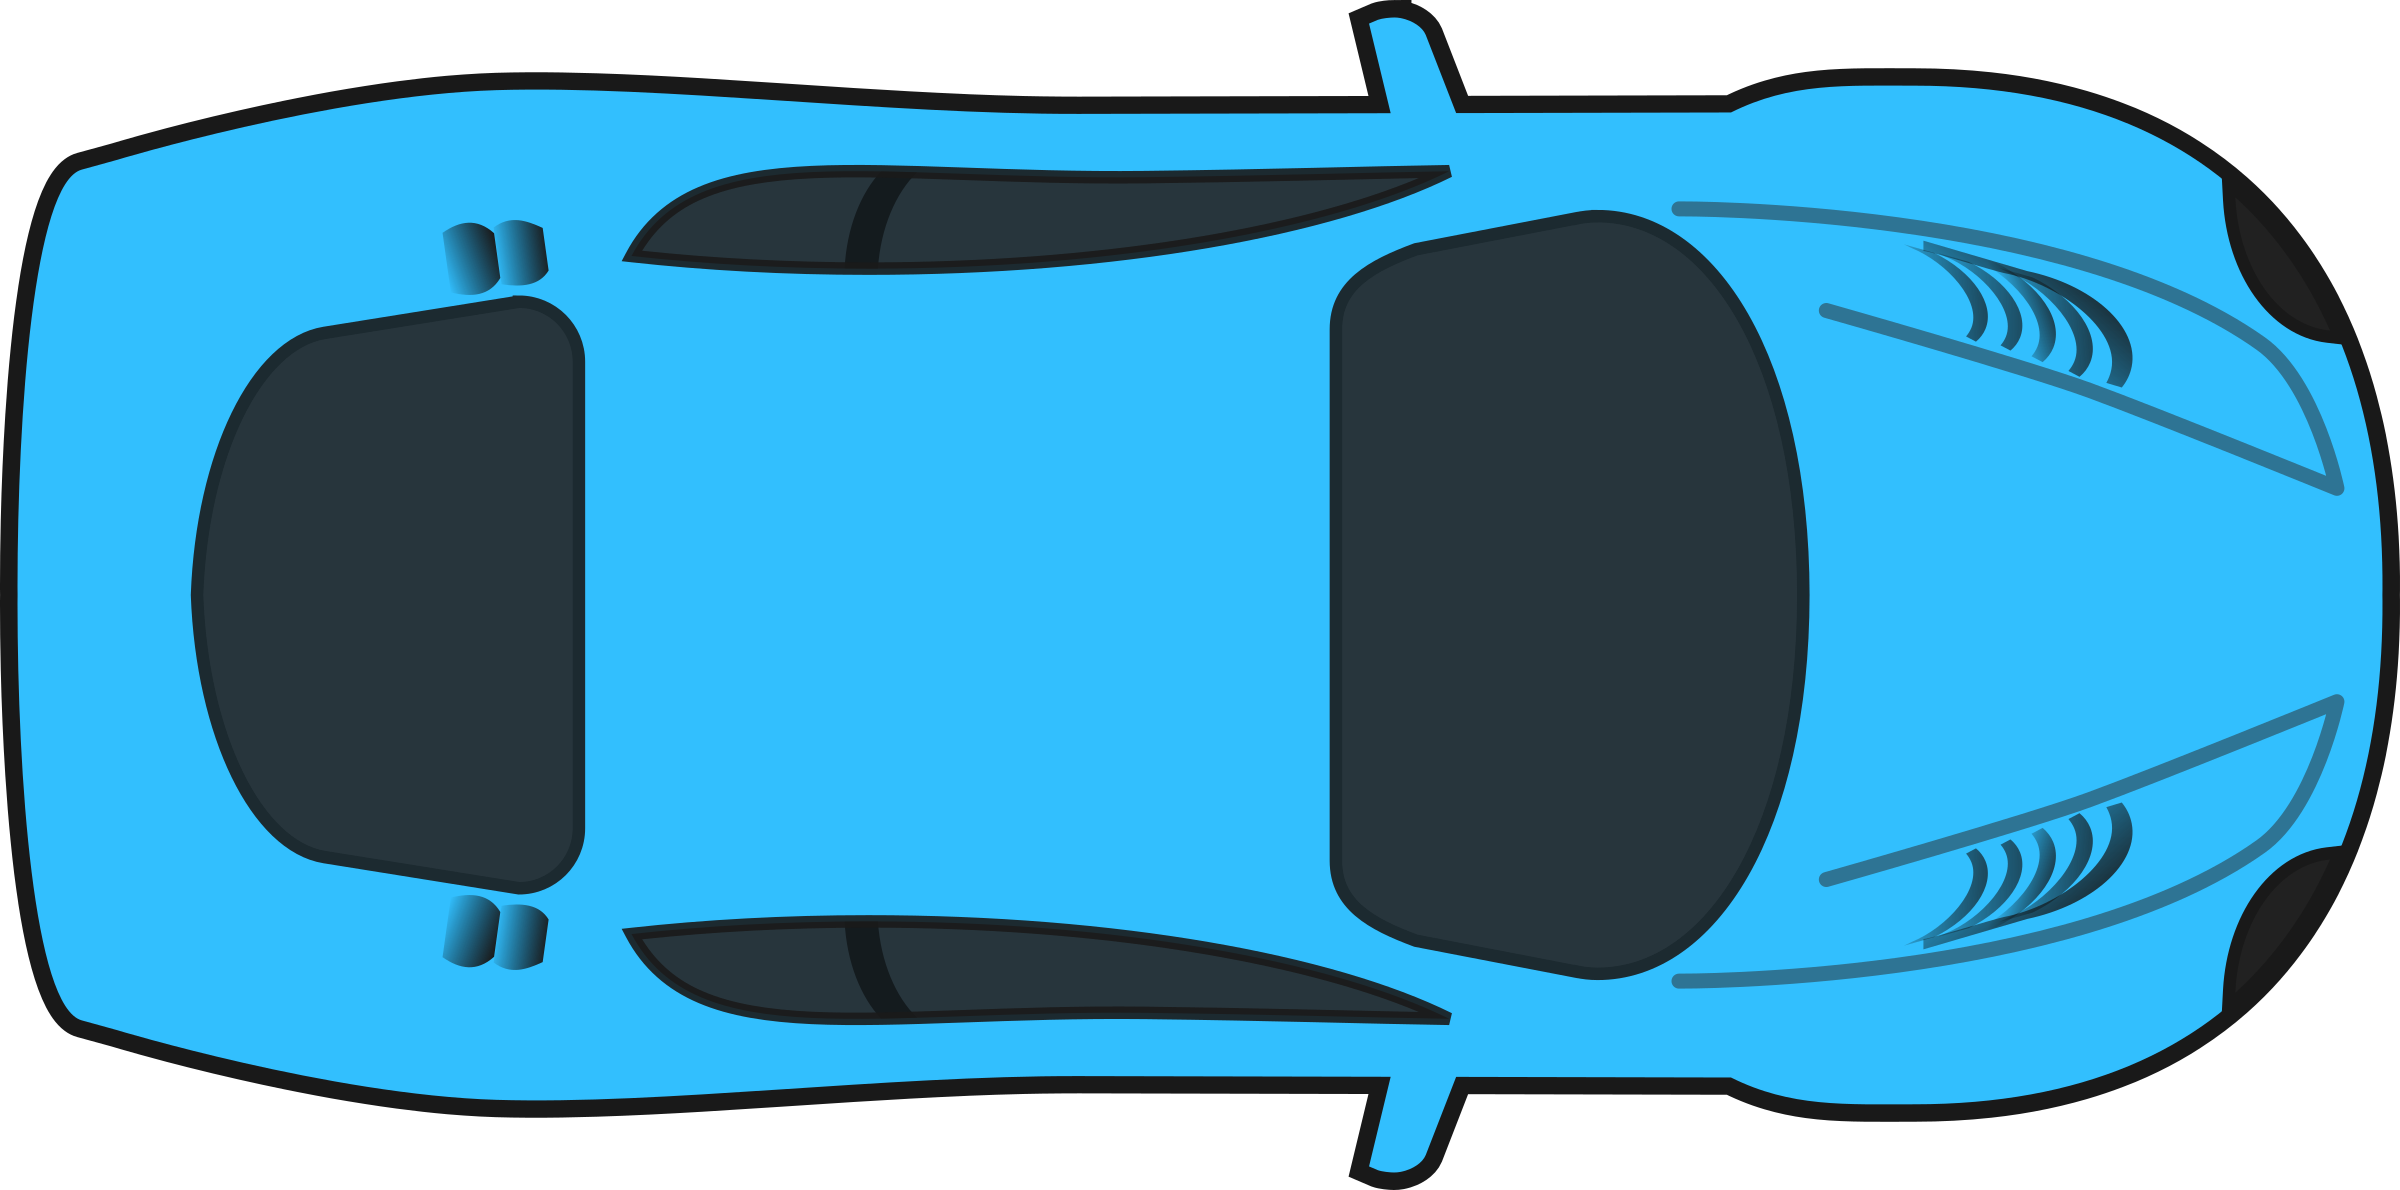 Blue Racing Car  Top View 